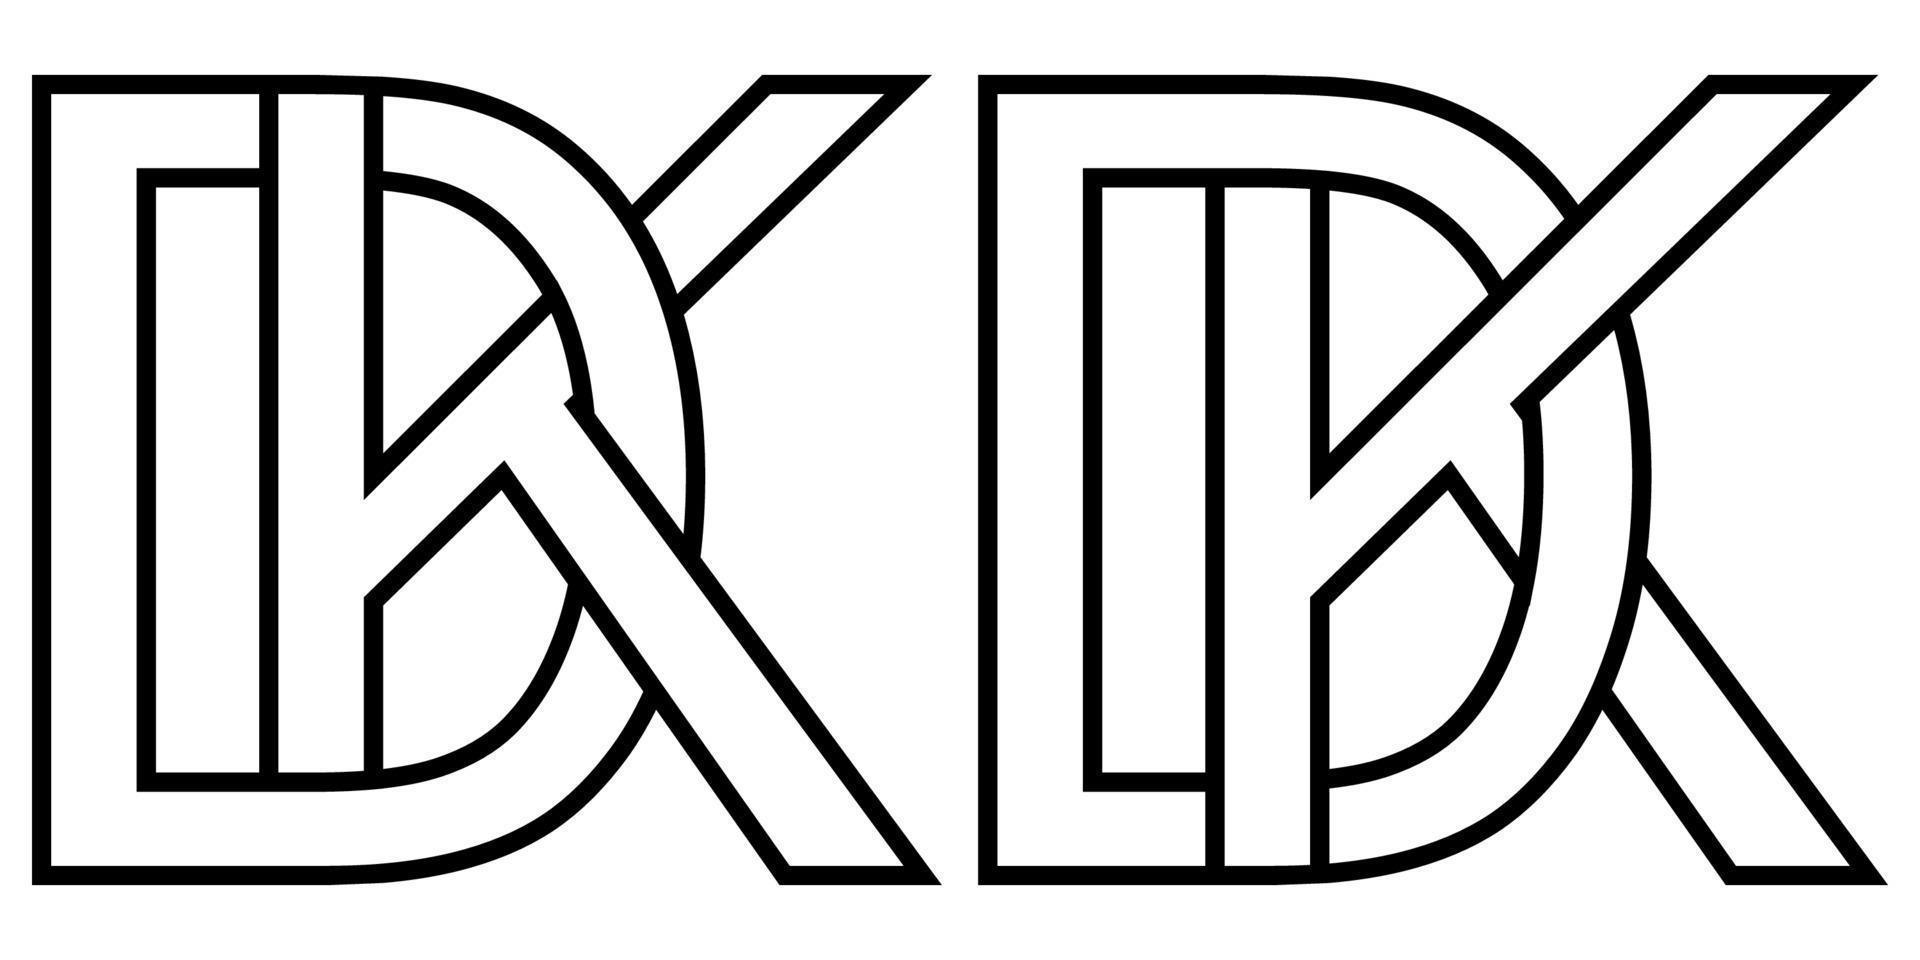 Logo dk und kd Symbol Zeichen zwei interlaced Briefe d k, Vektor Logo dk kd zuerst Hauptstadt Briefe Muster Alphabet d k